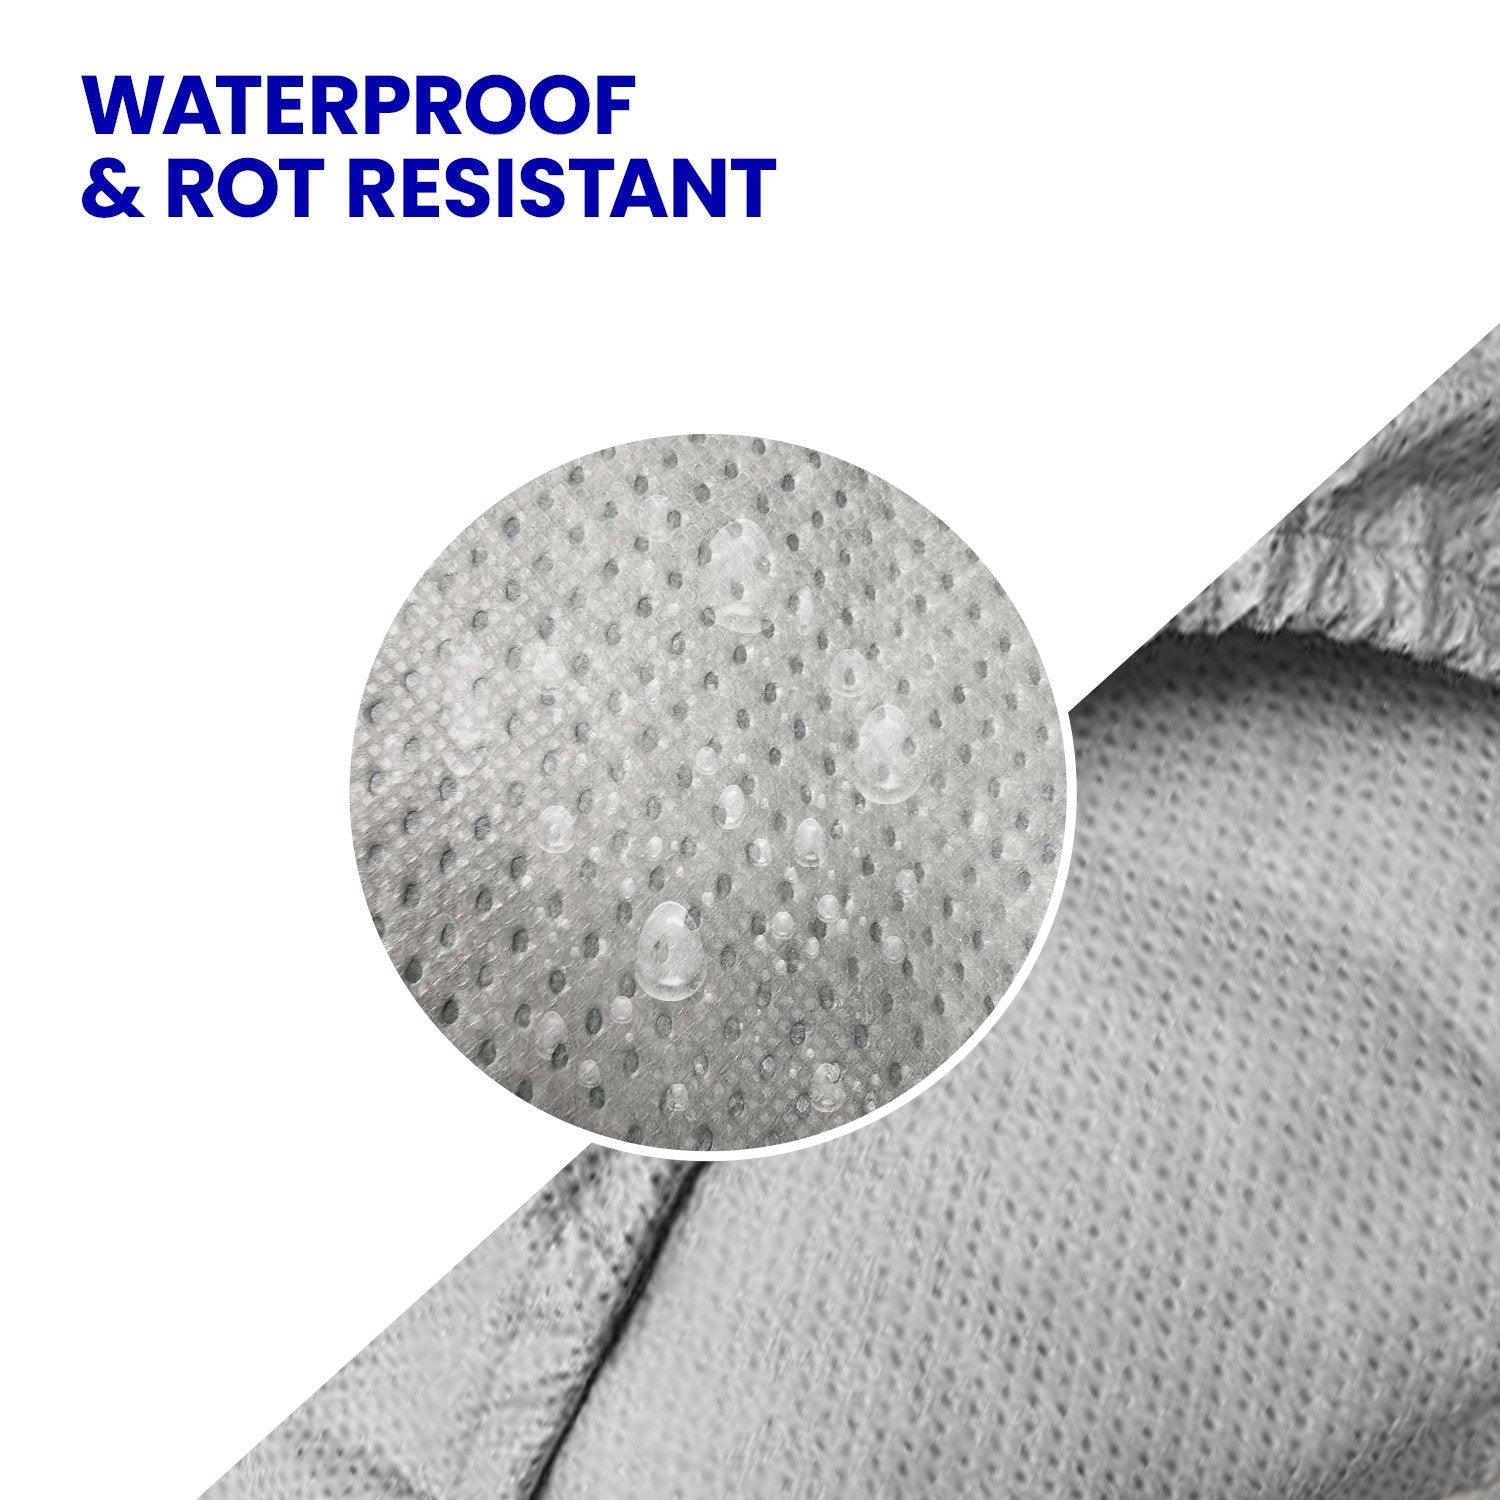 Deluxe Waterproof Ute Cover